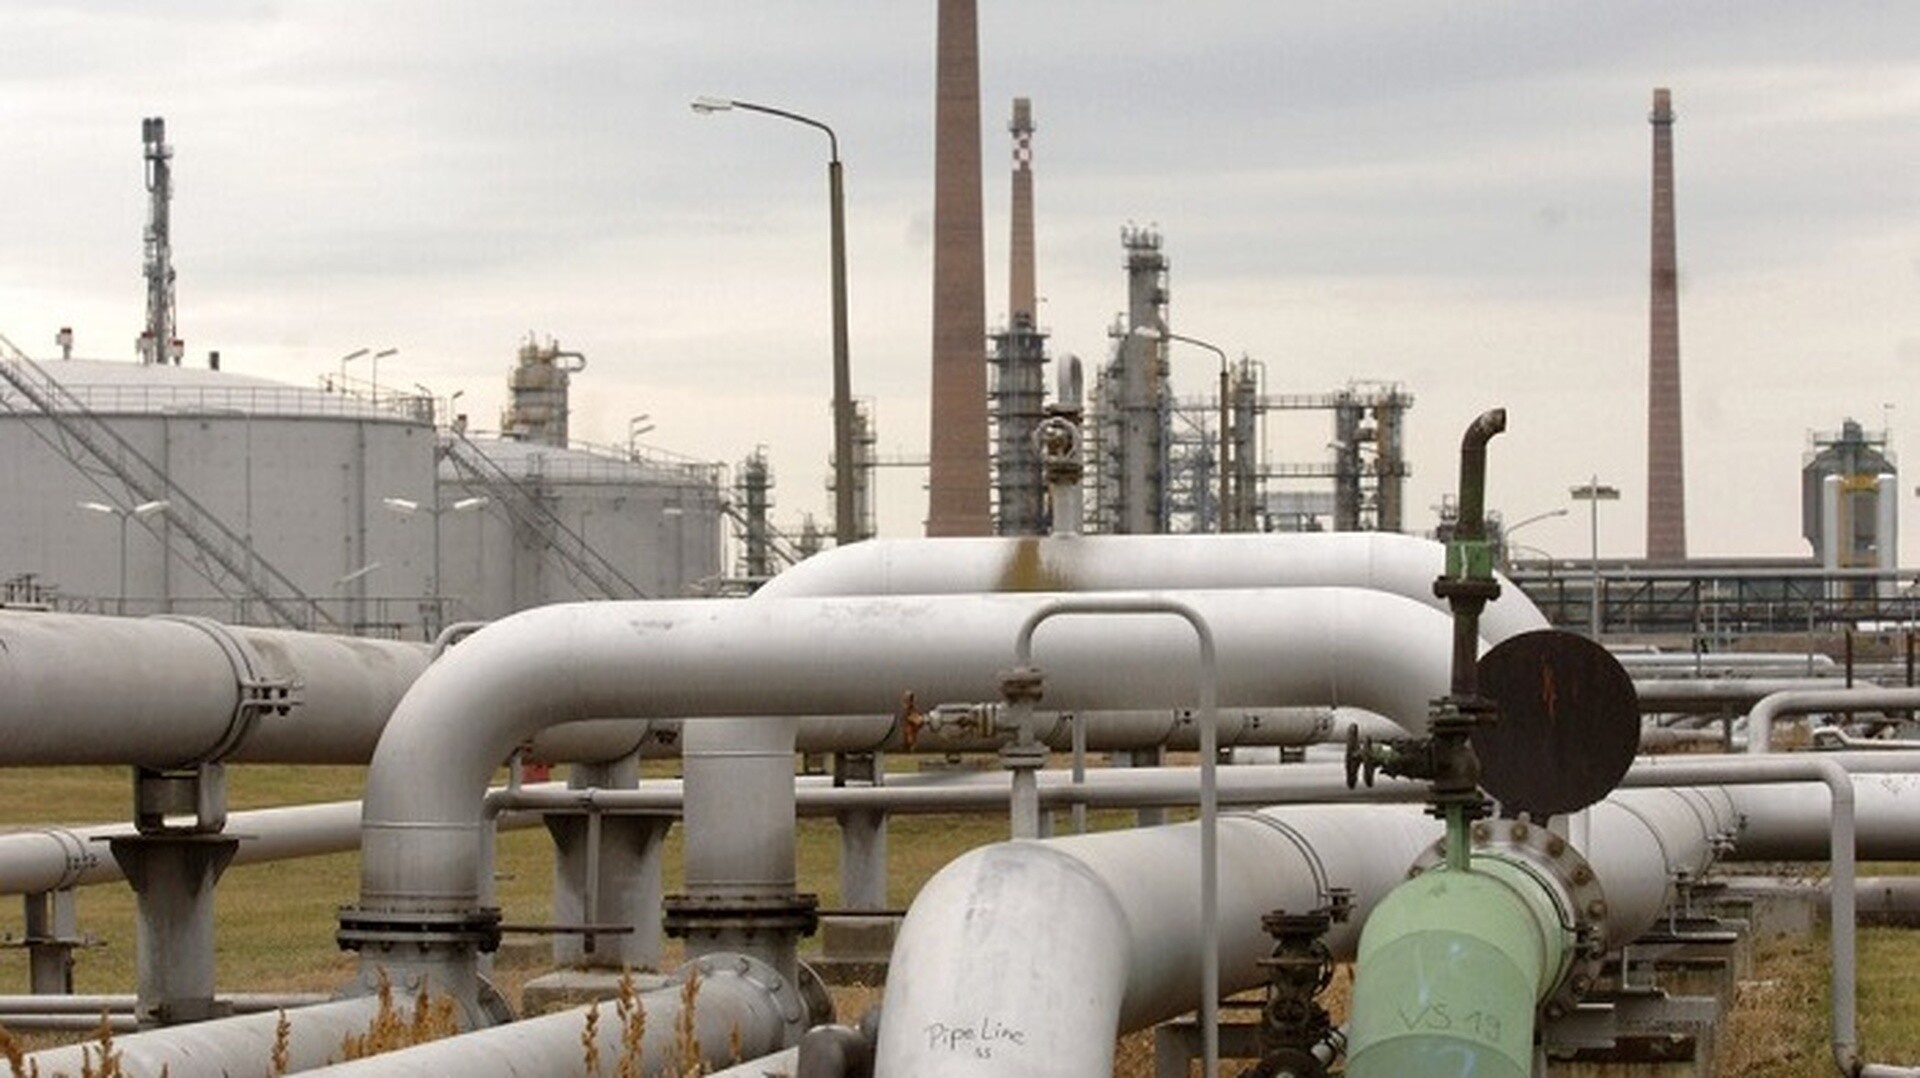 Πολωνία: Ερευνάται σχέση πετρελαϊκού ομίλου με τη Χεζμπολάχ - Λιβανικής καταγωγής ο ύποπτος